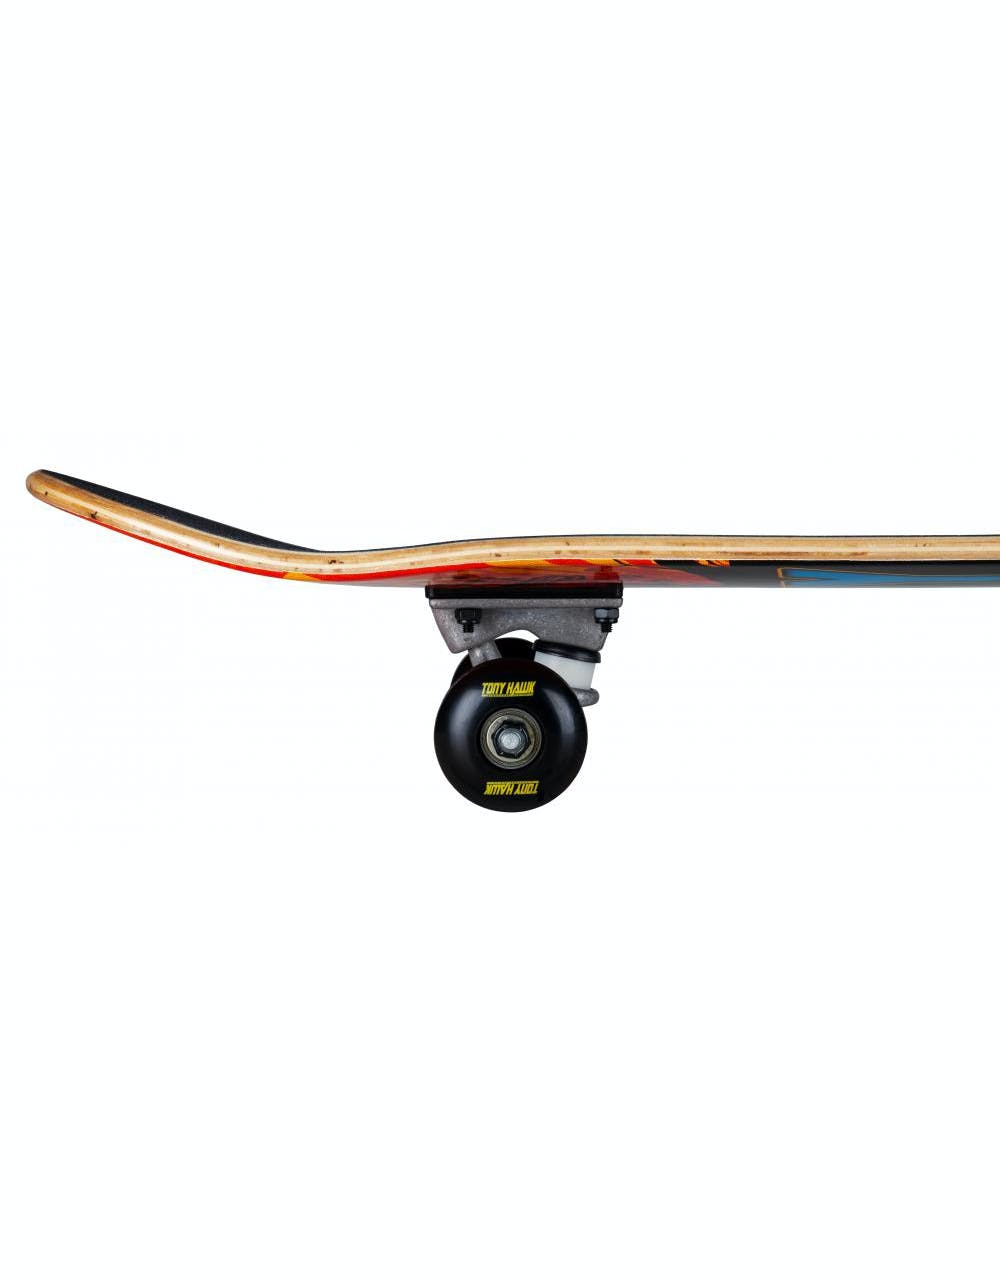 Tony Hawk 180 Shatter Logo Complete Skateboard - 7.75"